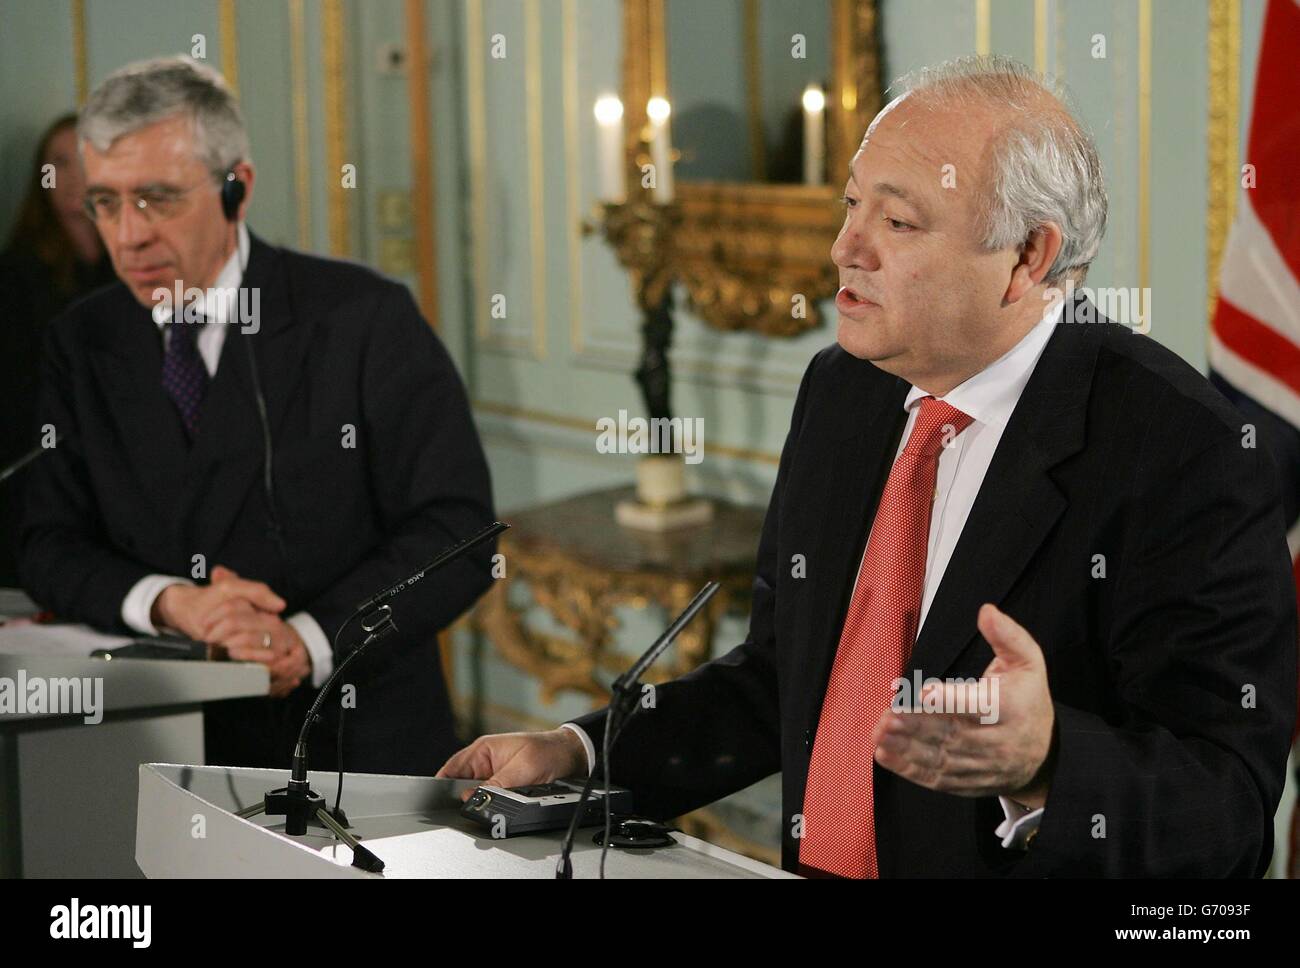 Il ministro degli Esteri britannico Jack Straw (L) ascolta come il ministro degli Esteri spagnolo Miguel Angel Moratinos parla durante una conferenza stampa congiunta al No. 1 Carlton Gardens di Londra, dopo una riunione per il pranzo. Foto Stock